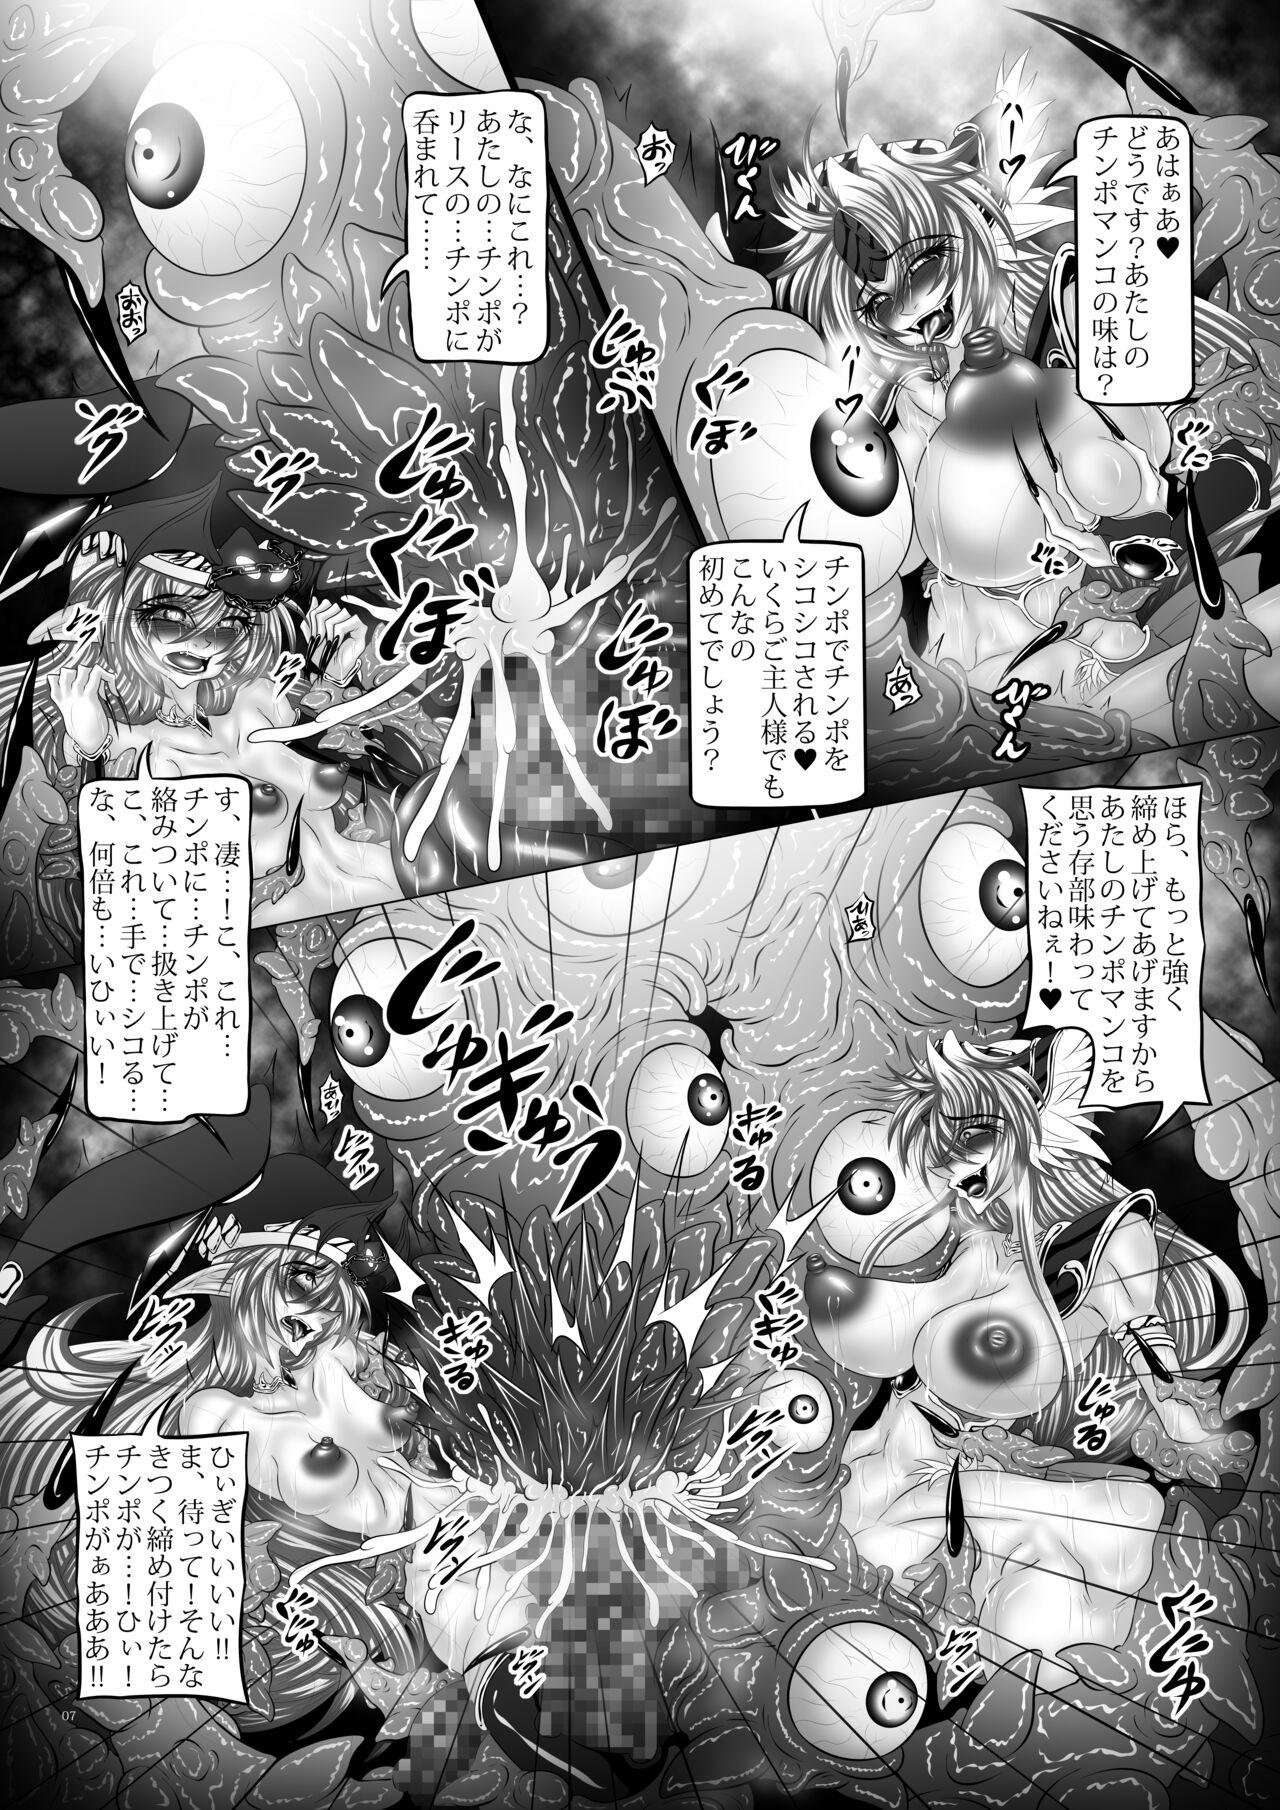 Bareback Dragon' s Fall V - Seiken densetsu 3 Maid - Page 6